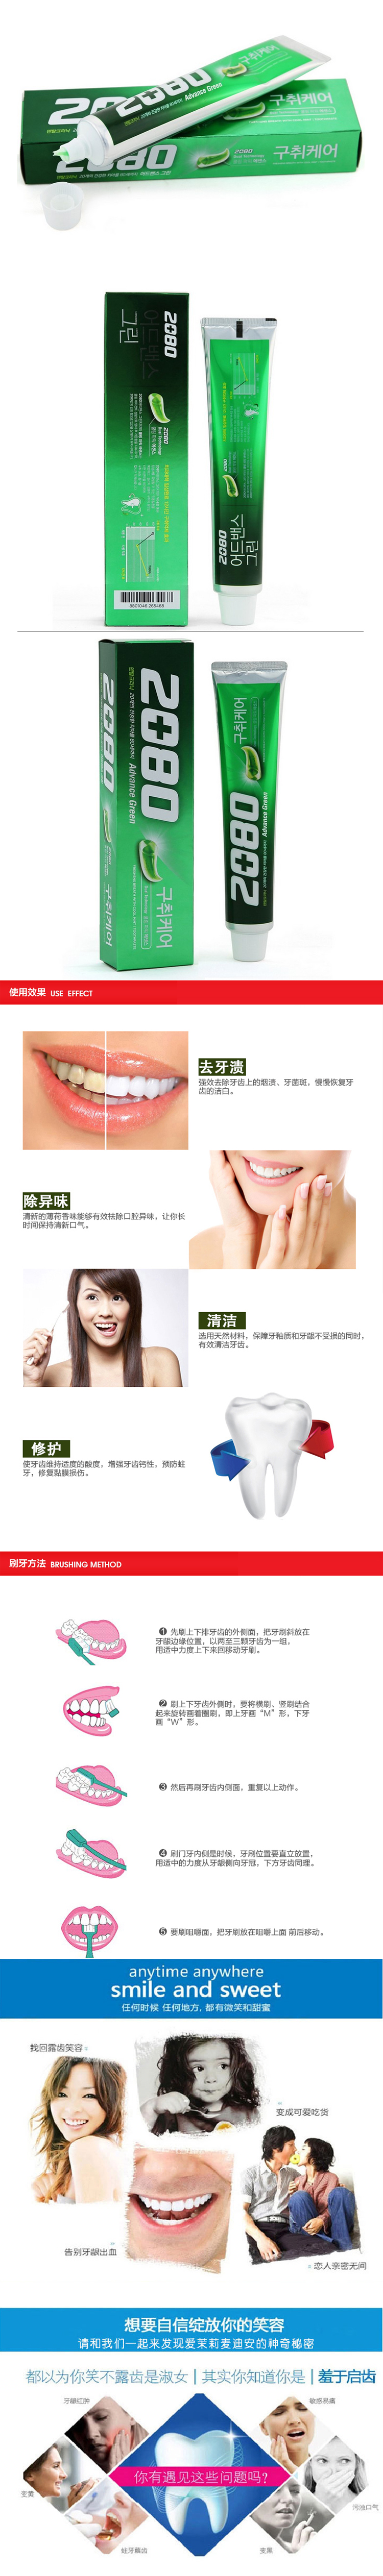 【韩国馆】(包邮)韩国进口正品 爱敬2080牙膏 12小时洁净牙膏 有效防蛀防虫牙140ml